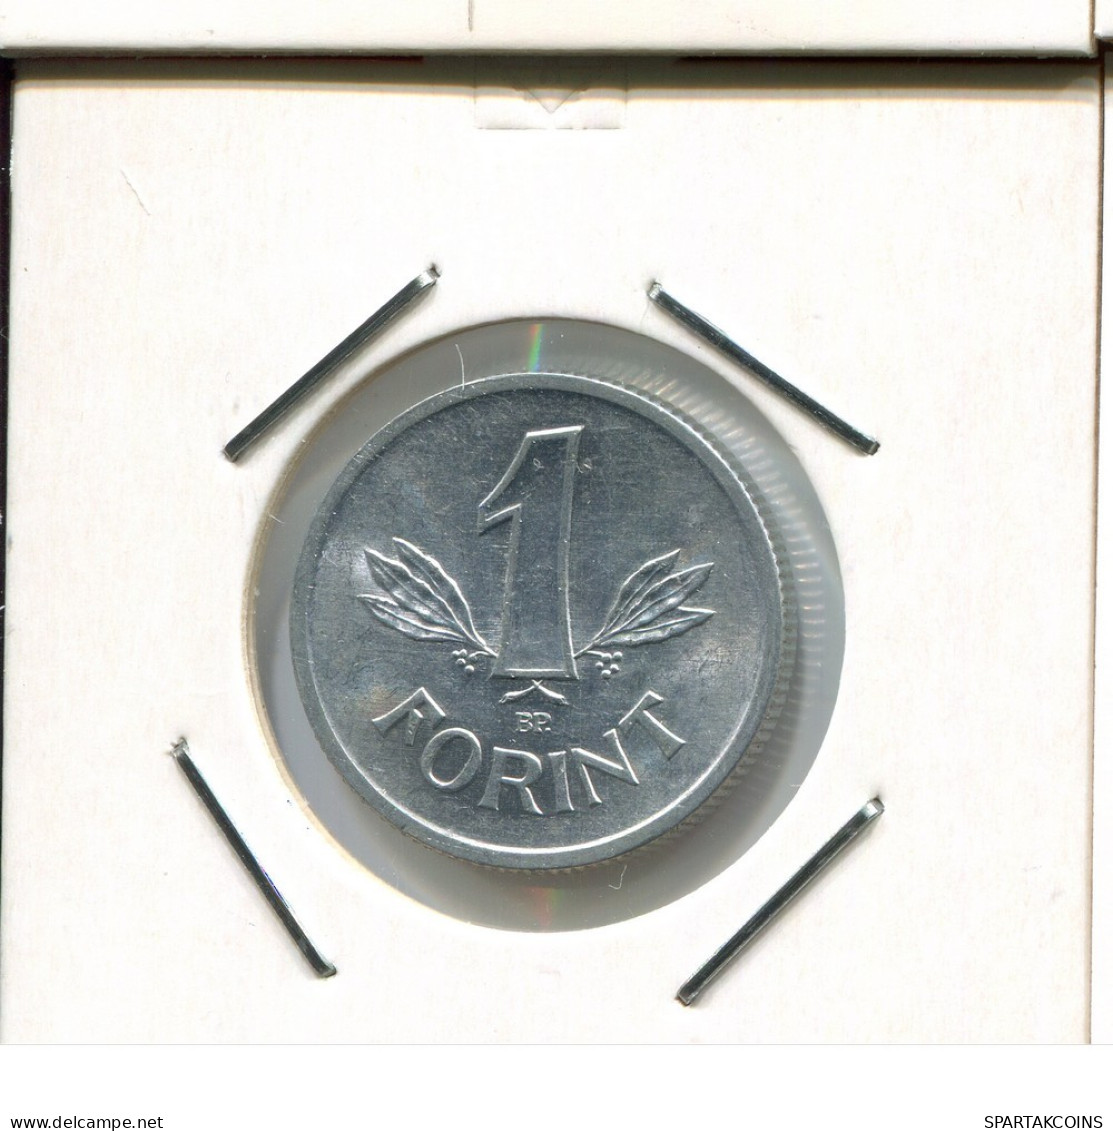 1 FORINT 1989 HUNGARY Coin #AR579.U.A - Hongrie